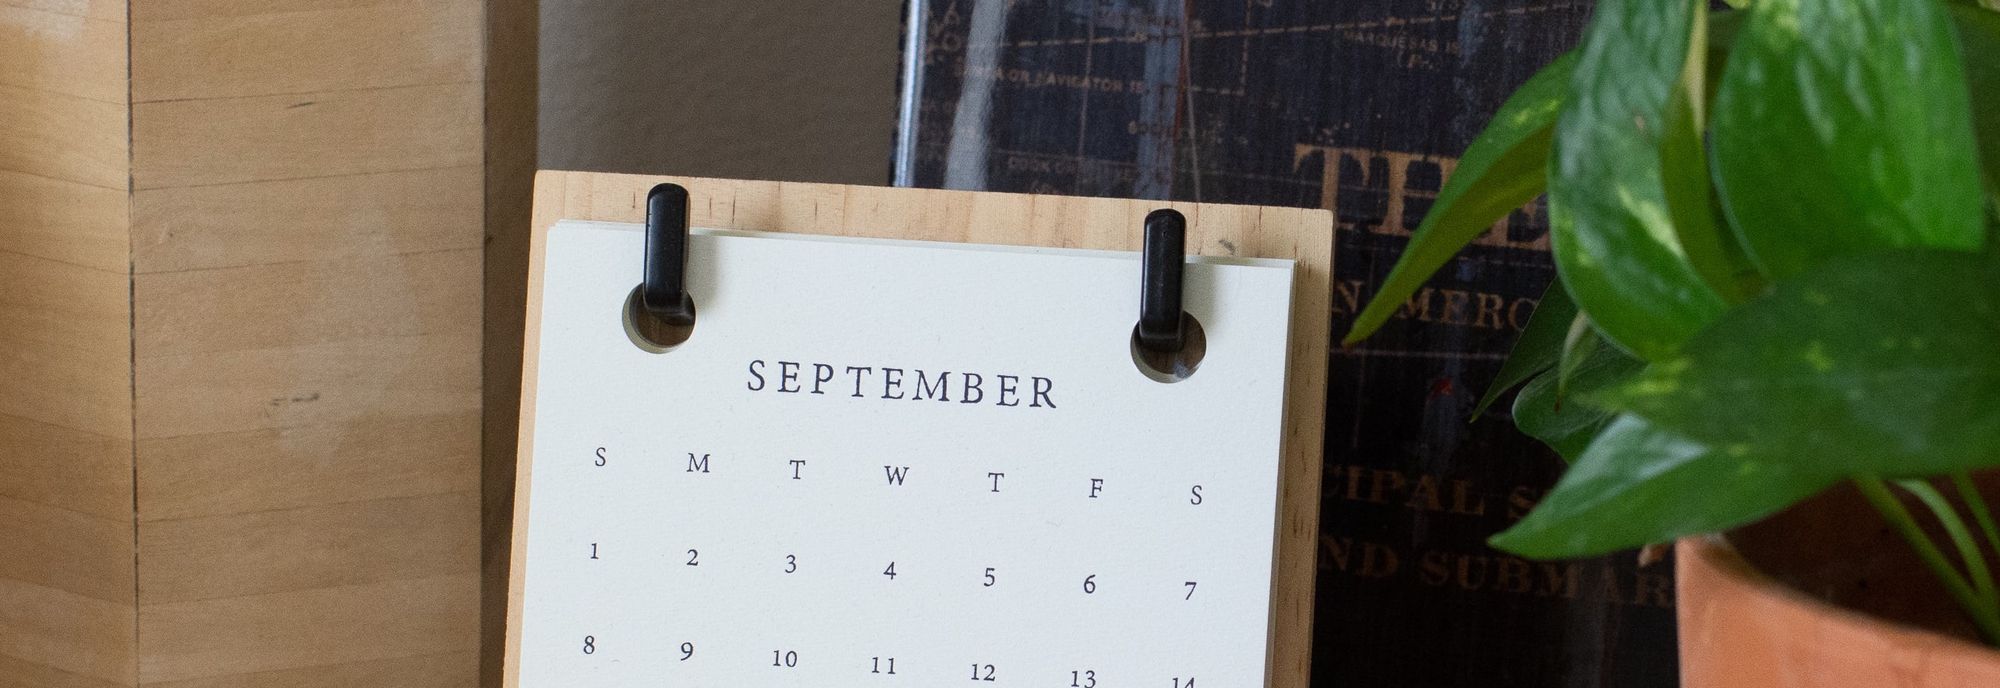 September's Sabbatical Shenanigans